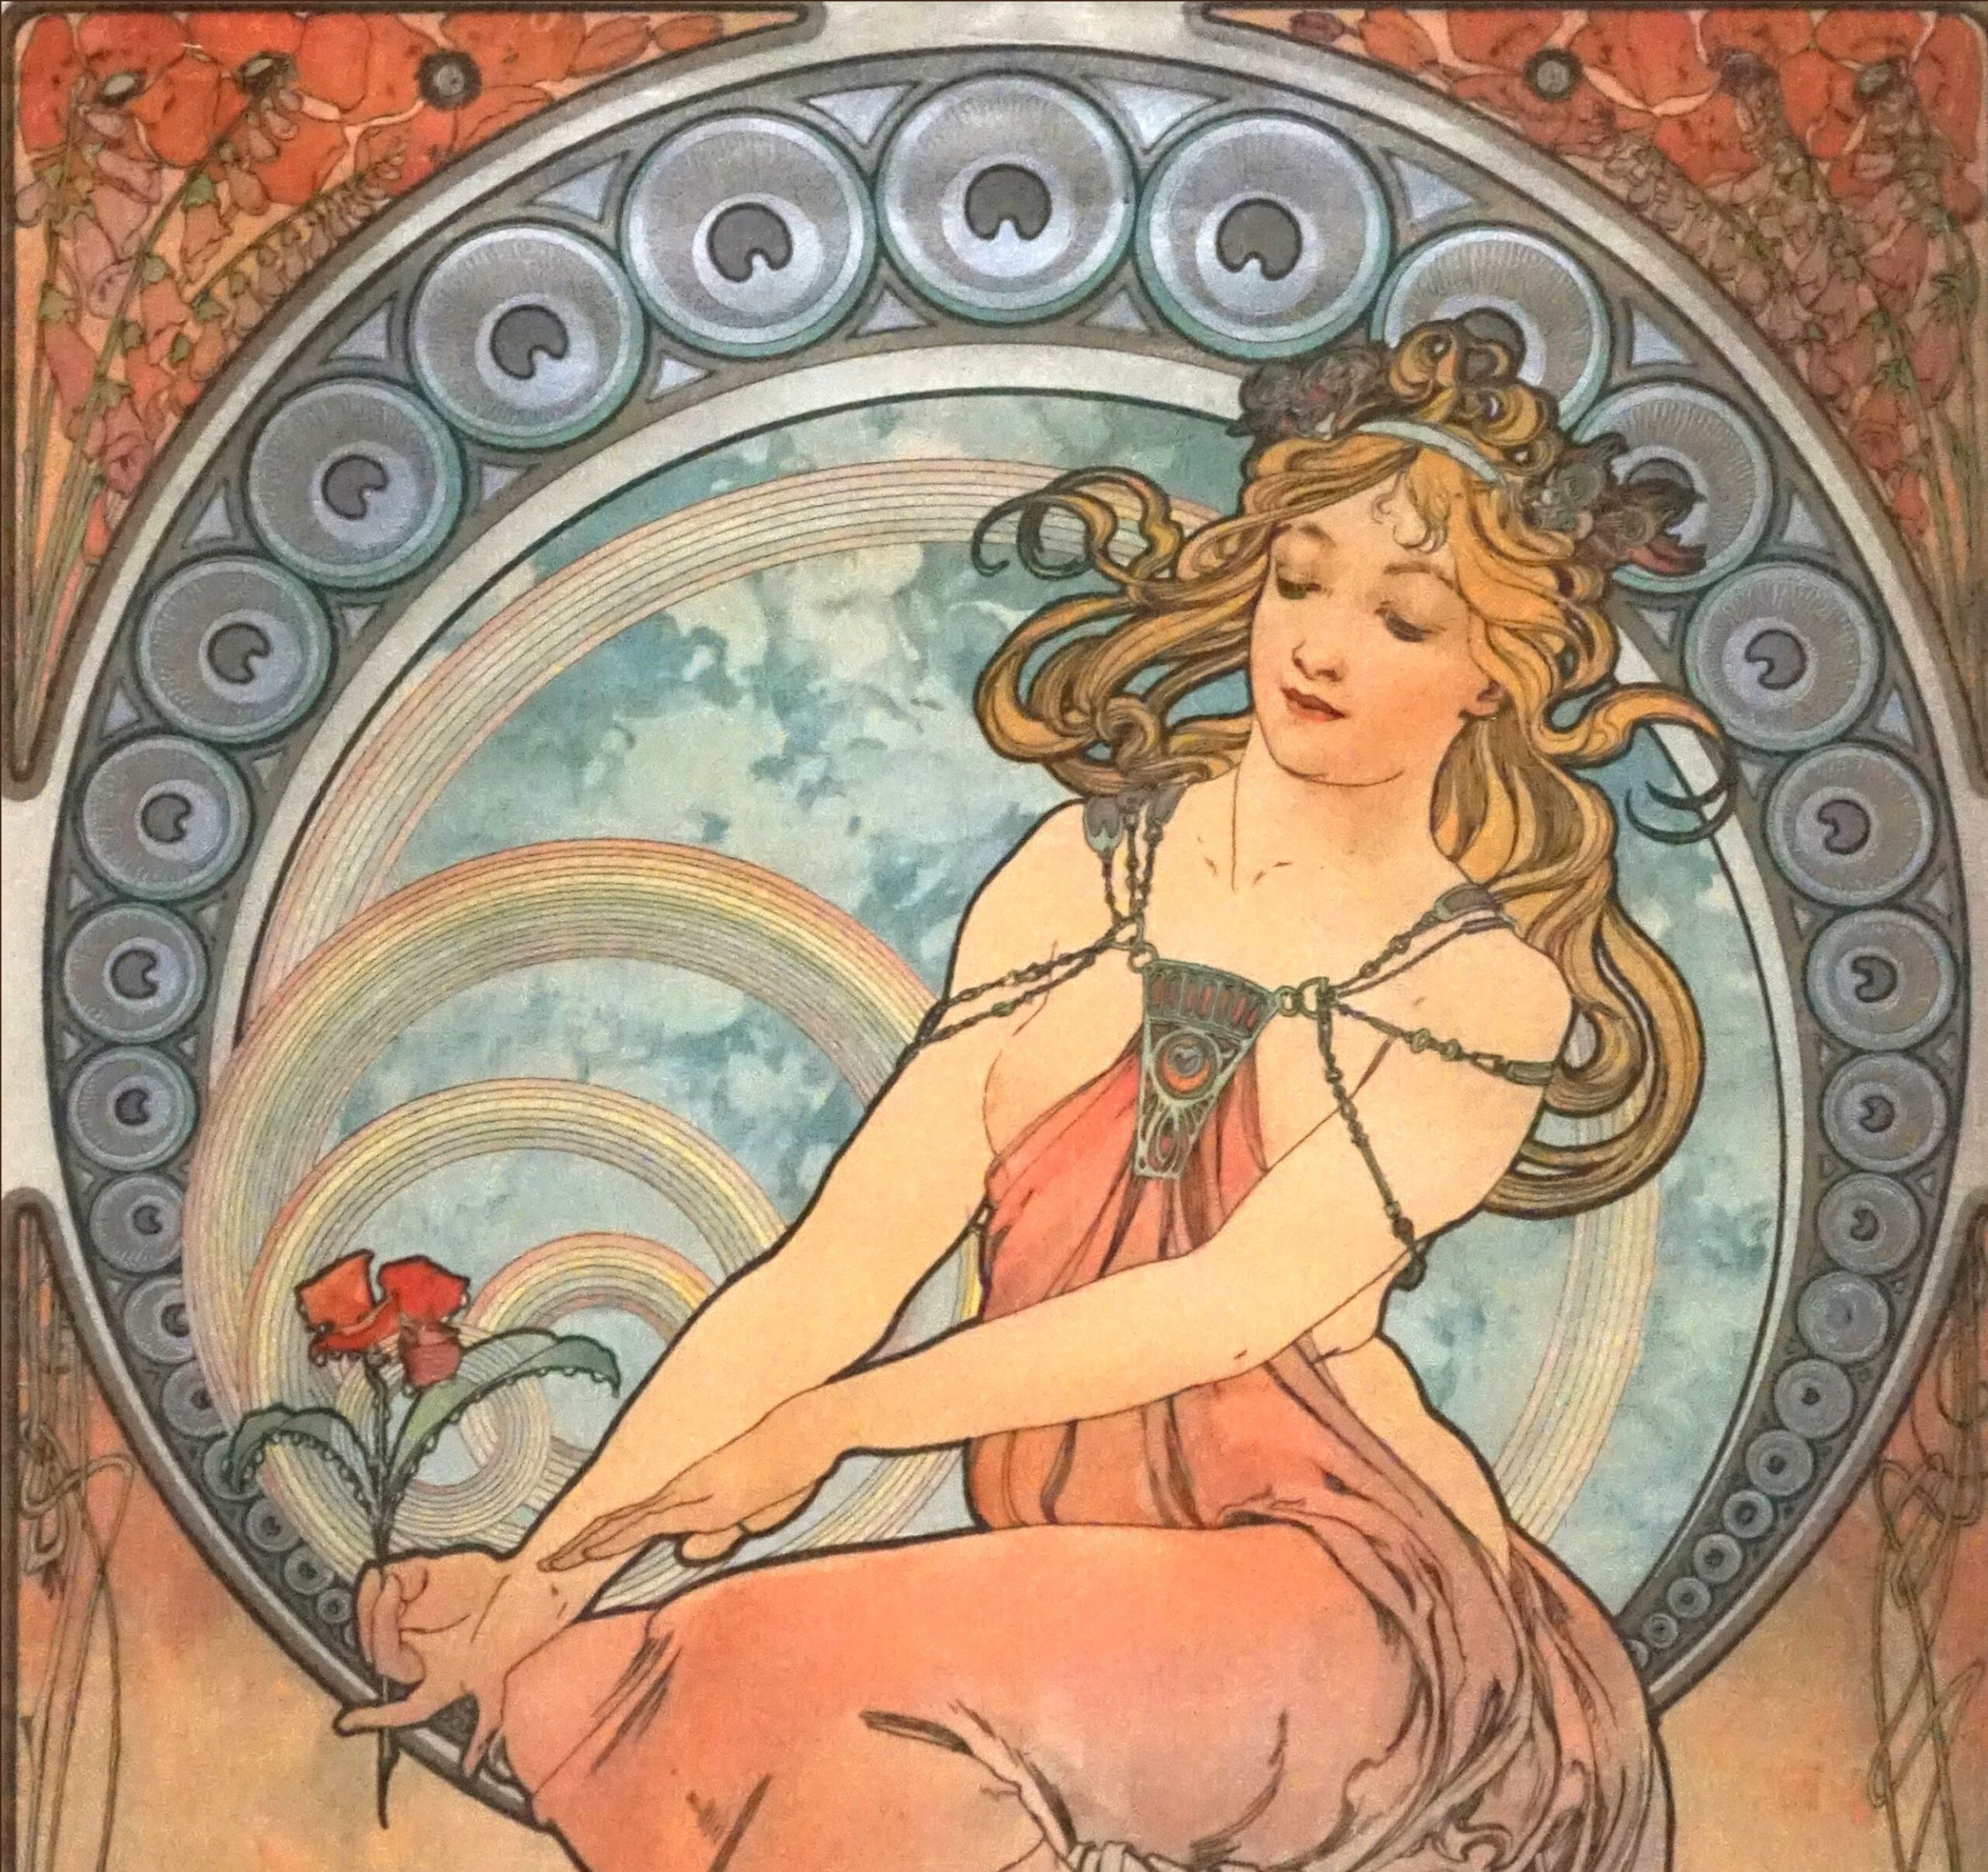 Firenze, arriva la seduzione dell'Art Nouveau di Alphonse Mucha